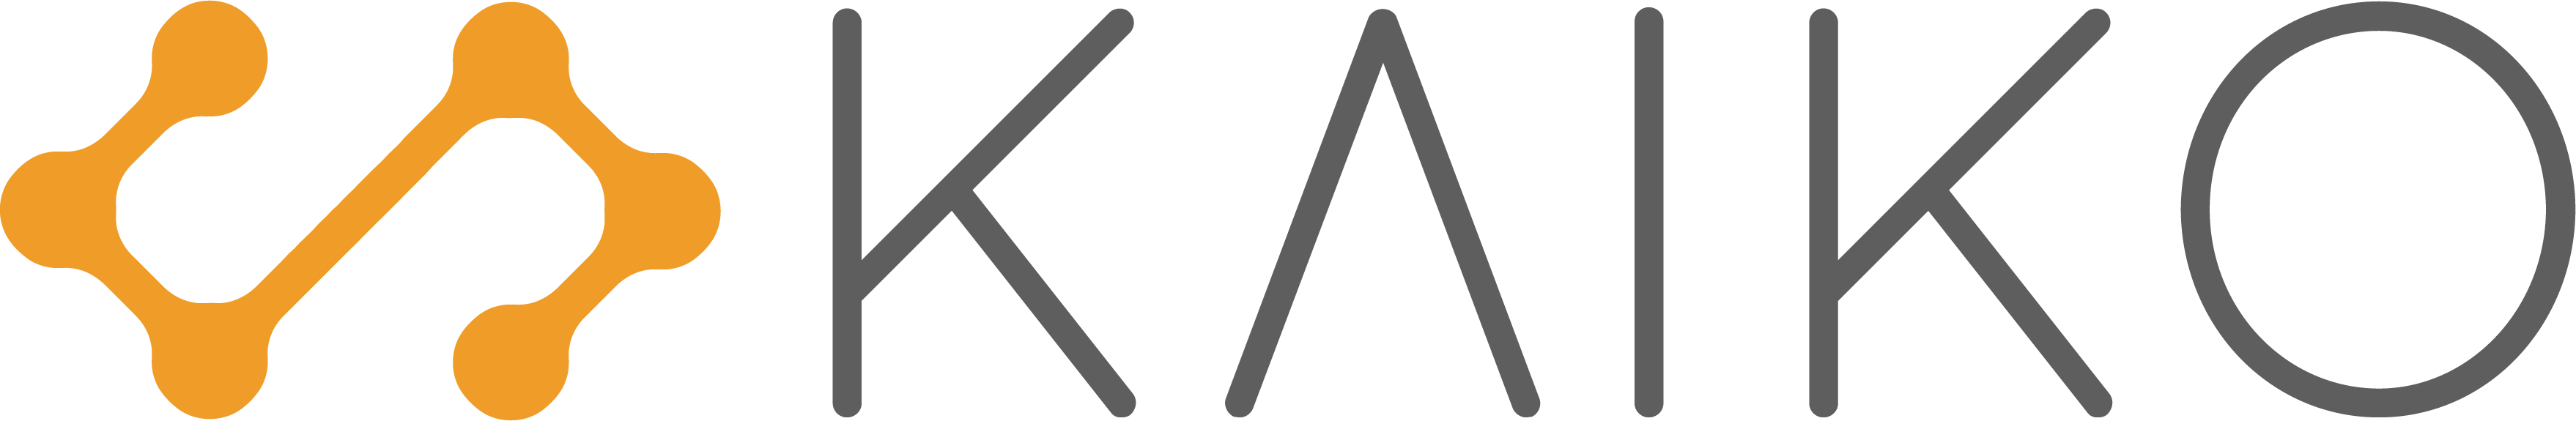 kaiko-logo